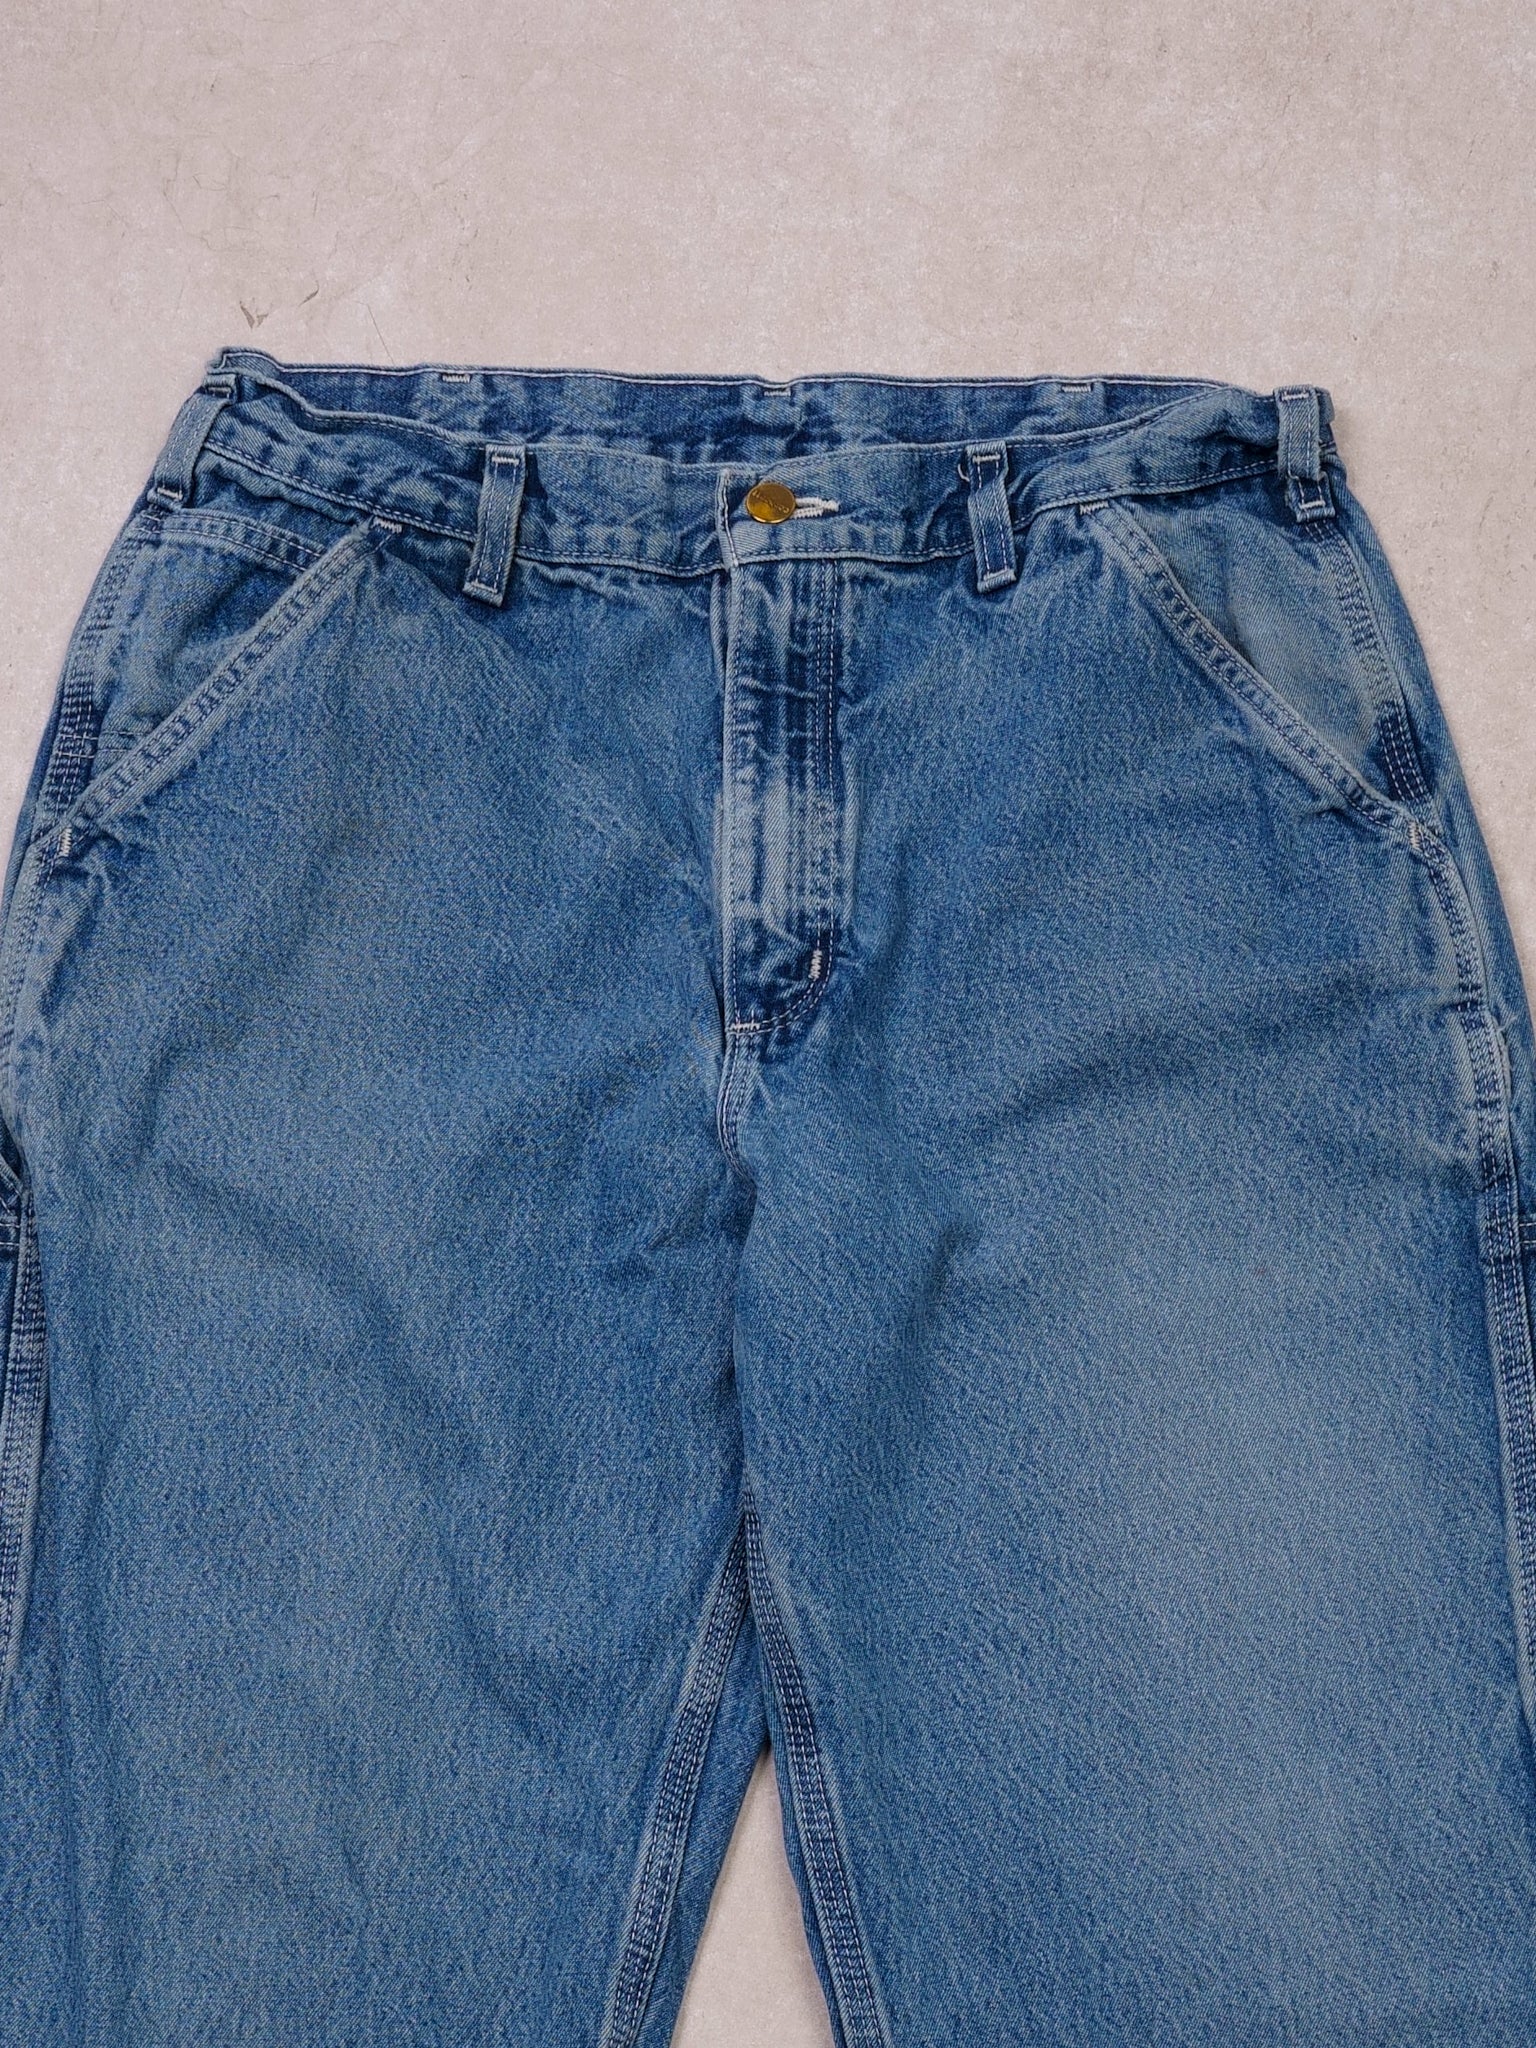 Vintage 90s Washed Blue Carhartt Denim Carpenter Pants (30x29)